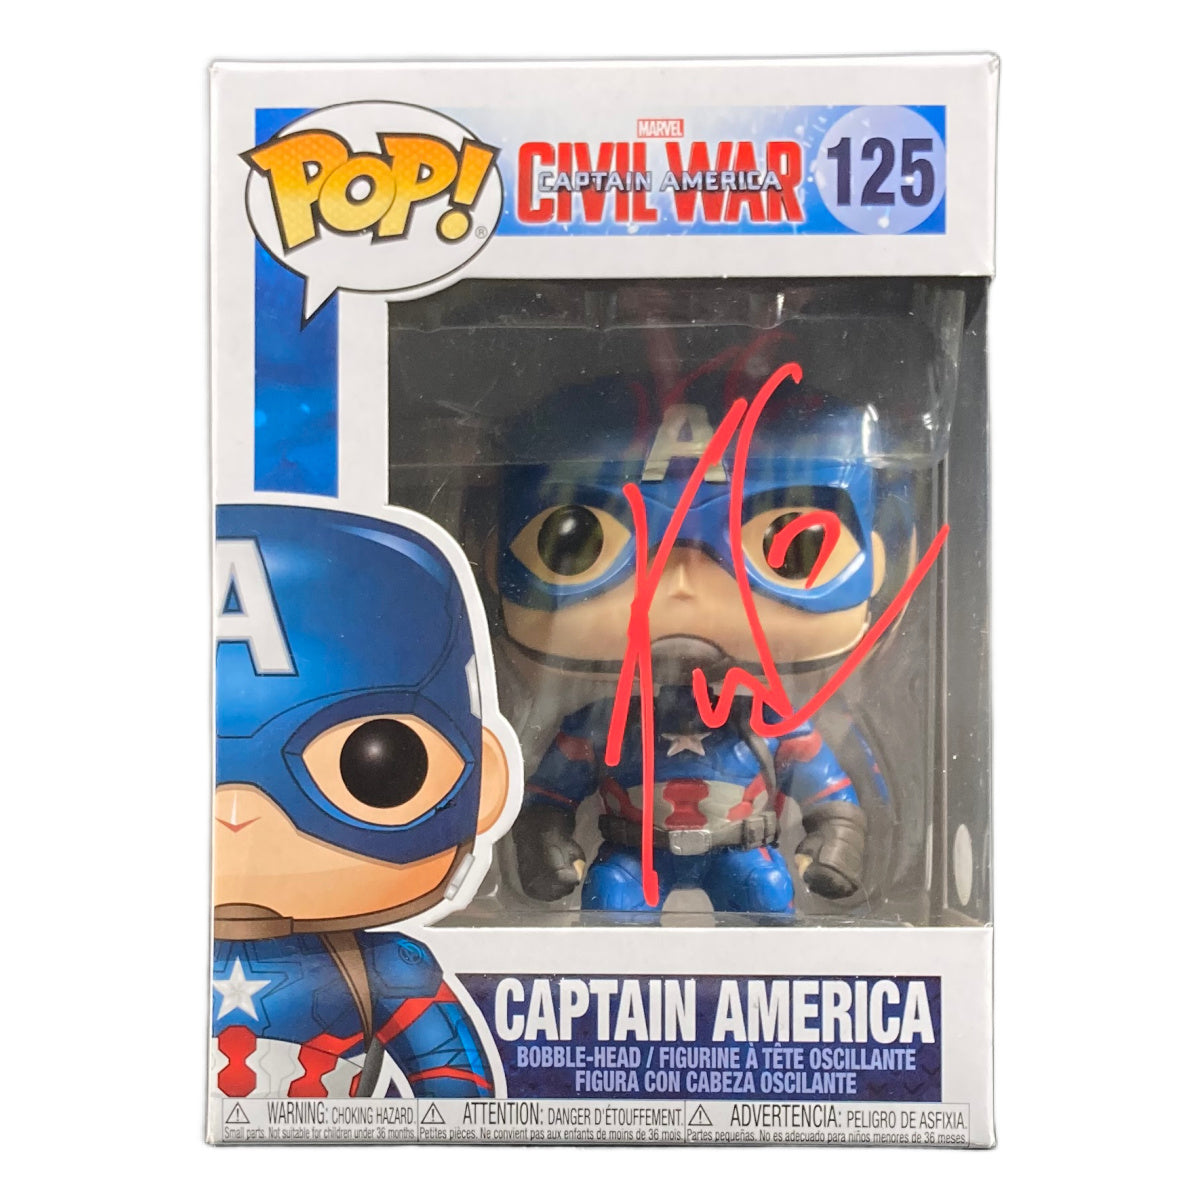 Kevin Feige Signed Funko POP Captain America President of Marvel Studios ACOA